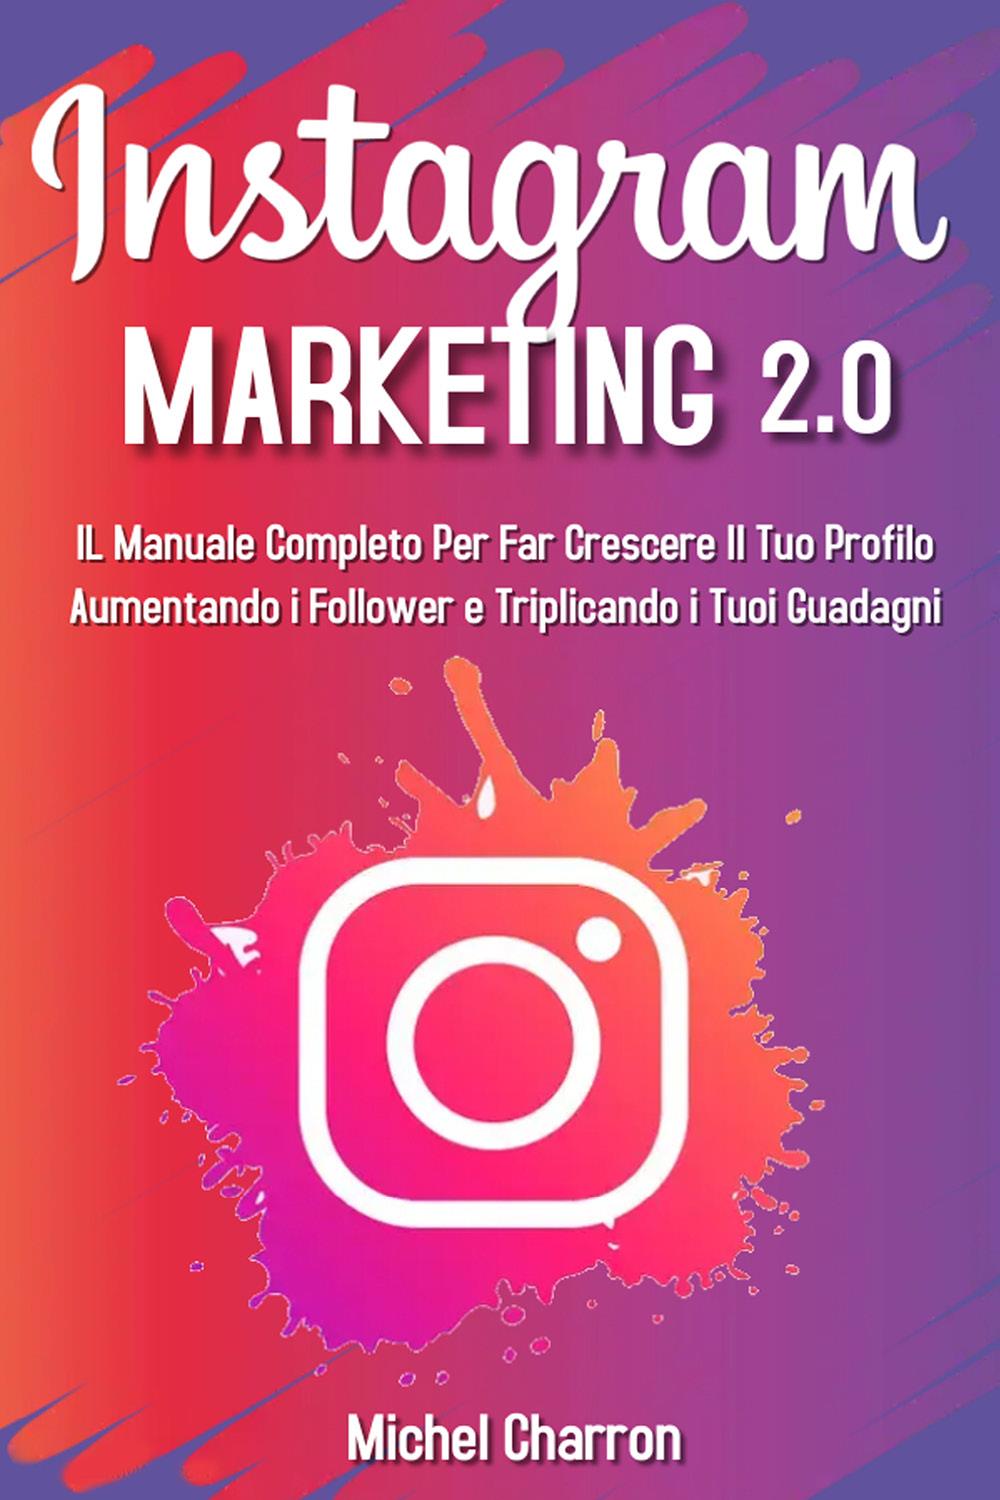 Instagram Marketing 2.0: Il Manuale Completo Per Far Crescere Il Tuo Profilo Aumentando i Follower e Triplicando i Tuoi Guadagni